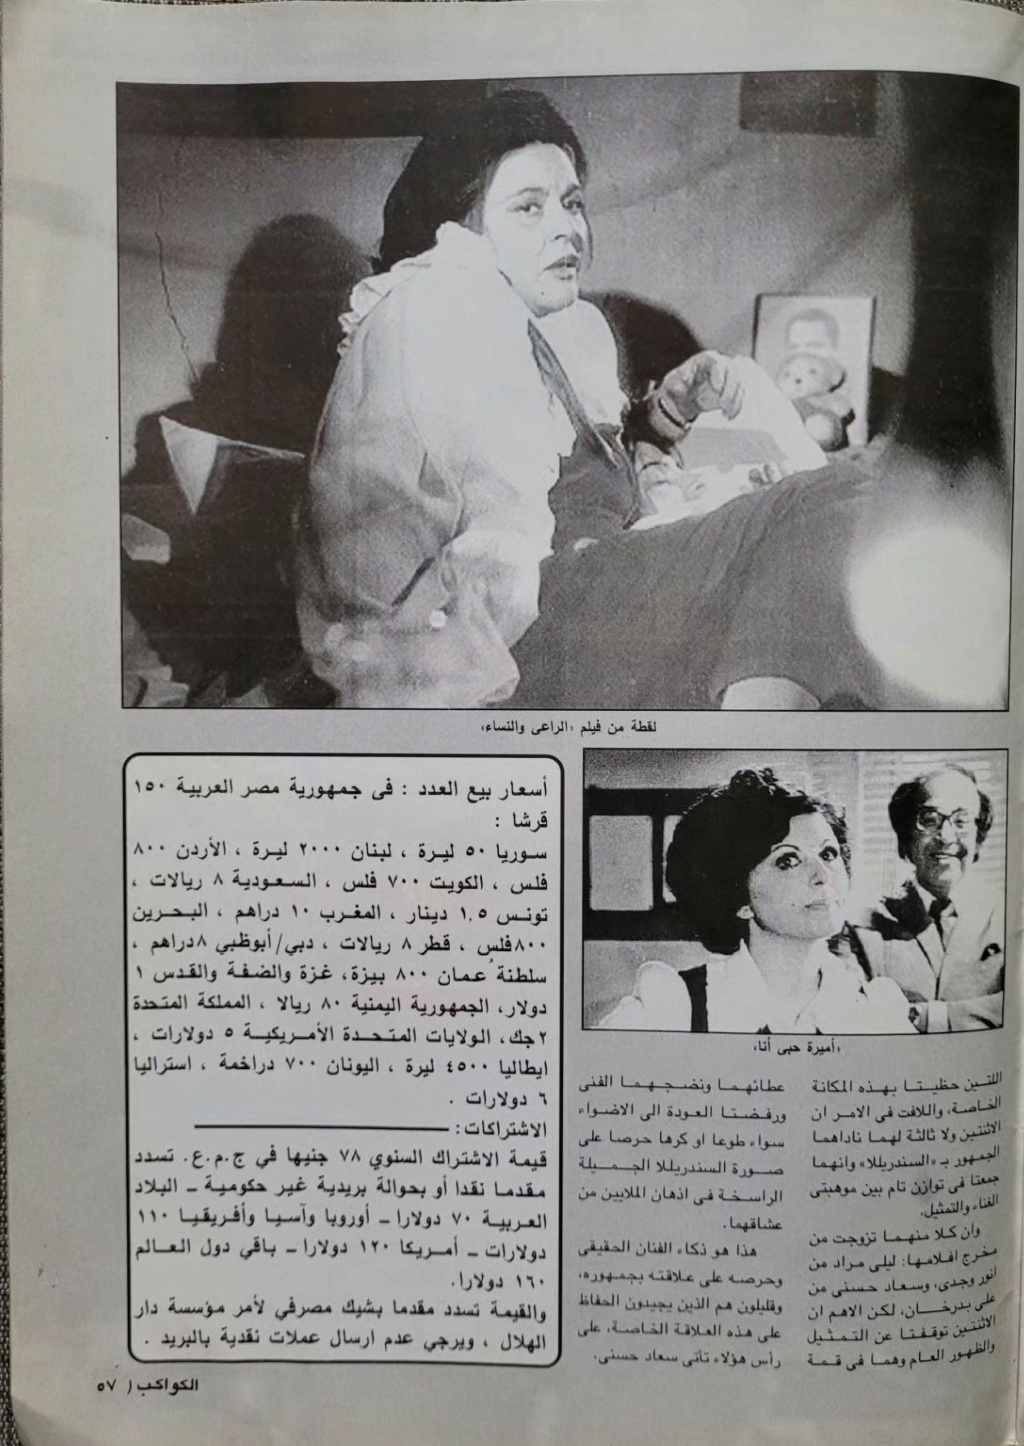 حسني - مقال صحفي : سعاد حسني فوق منصة التتويج 1998 م 412